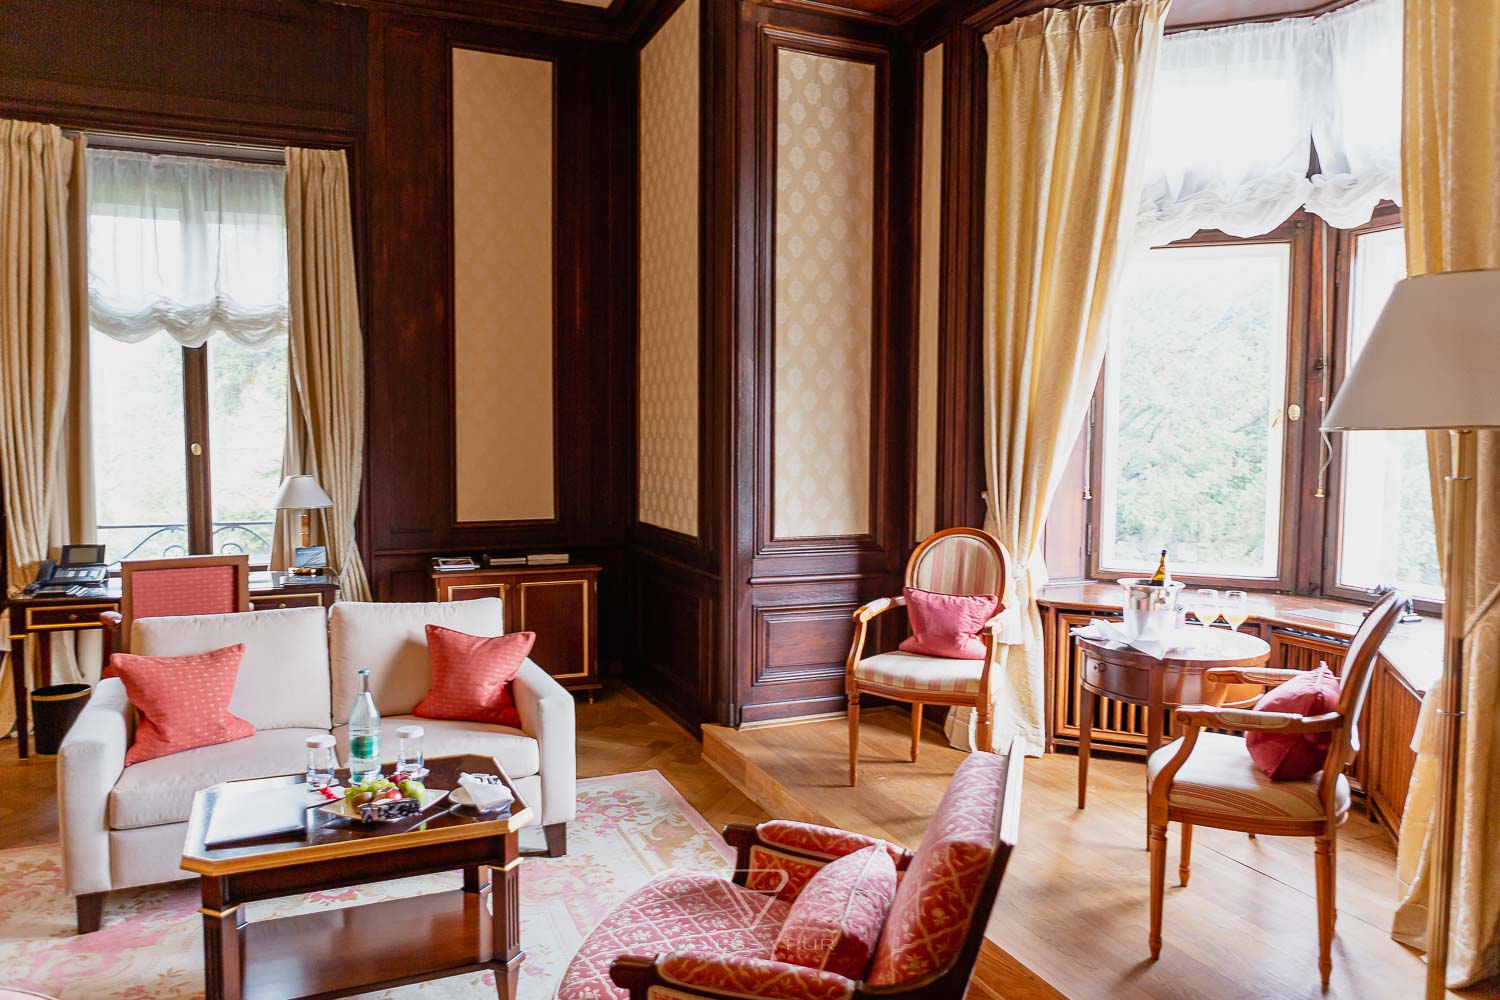 Villa Rothschild Frankfurt - Kempinski Hotel Königstein Taunus Mountains - luxury hotel near Frankfurt - recreation with style